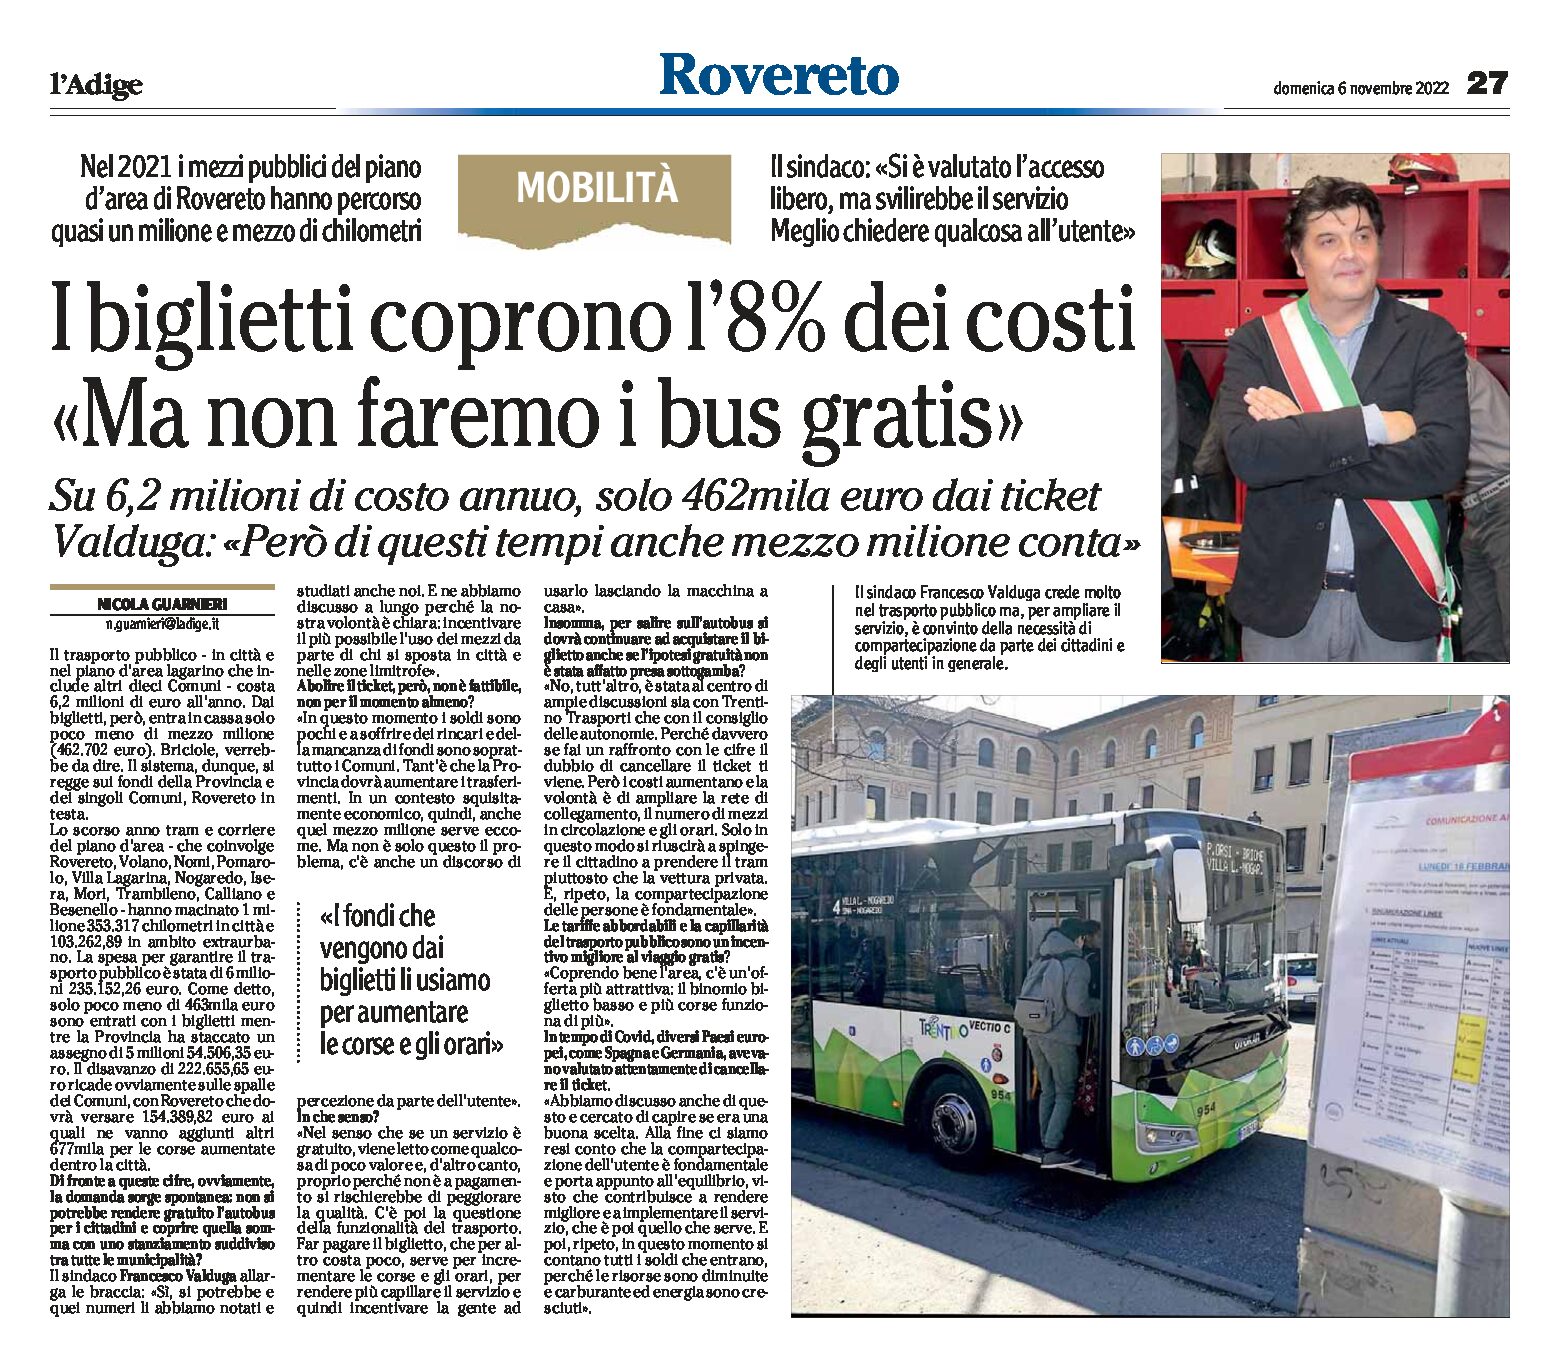 Rovereto, autobus: i biglietti coprono l’8% dei costi, ma non faremo i bus gratis